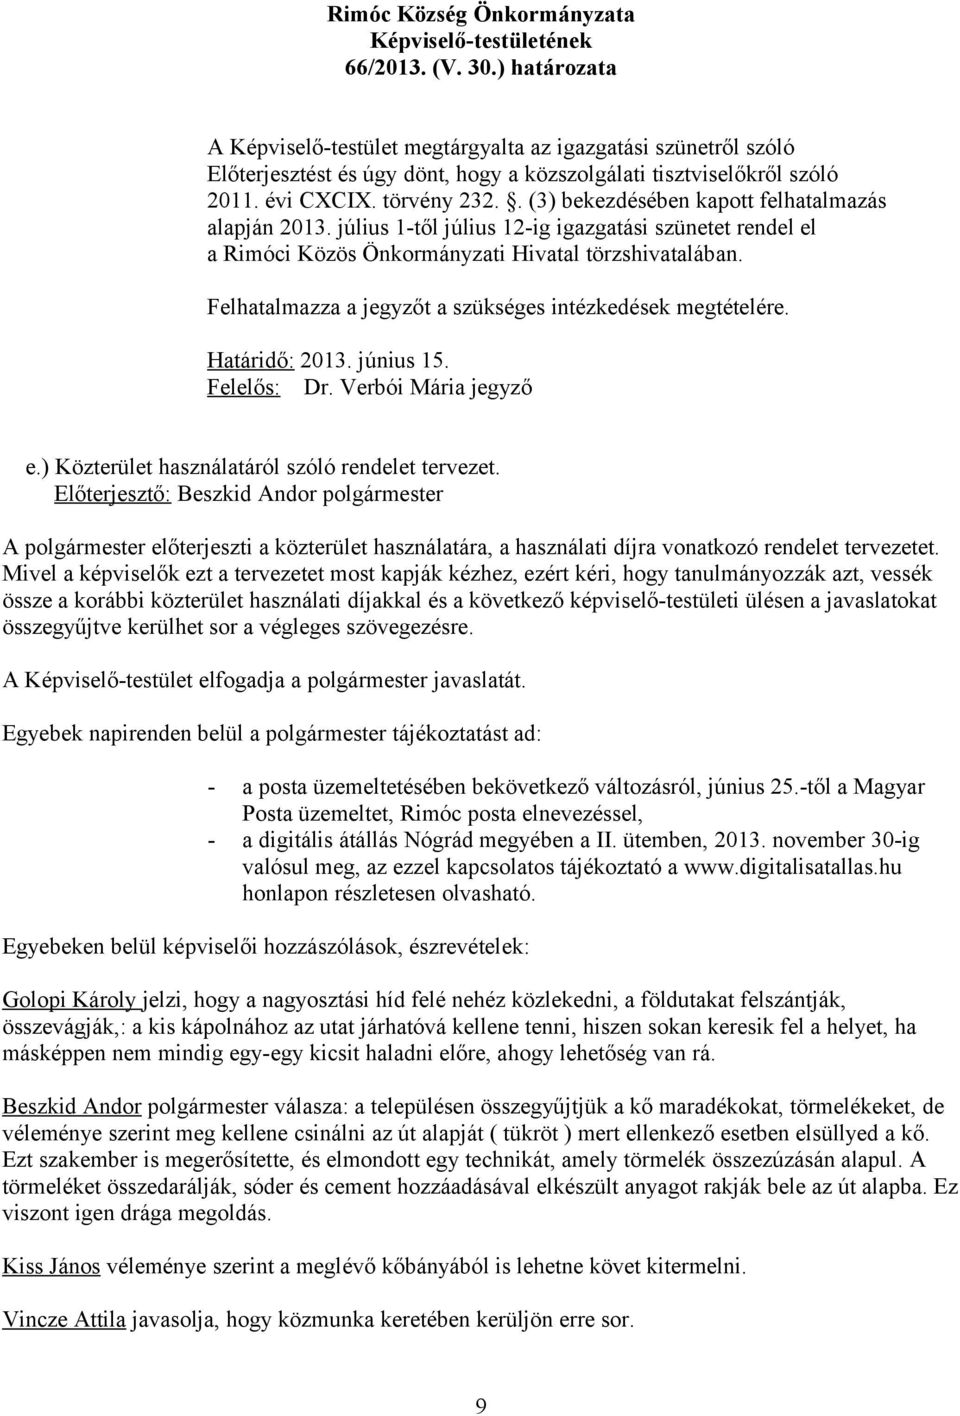 Felhatalmazza a jegyzőt a szükséges intézkedések megtételére. Határidő: 2013. június 15. Felelős: Dr. Verbói Mária jegyző e.) Közterület használatáról szóló rendelet tervezet.